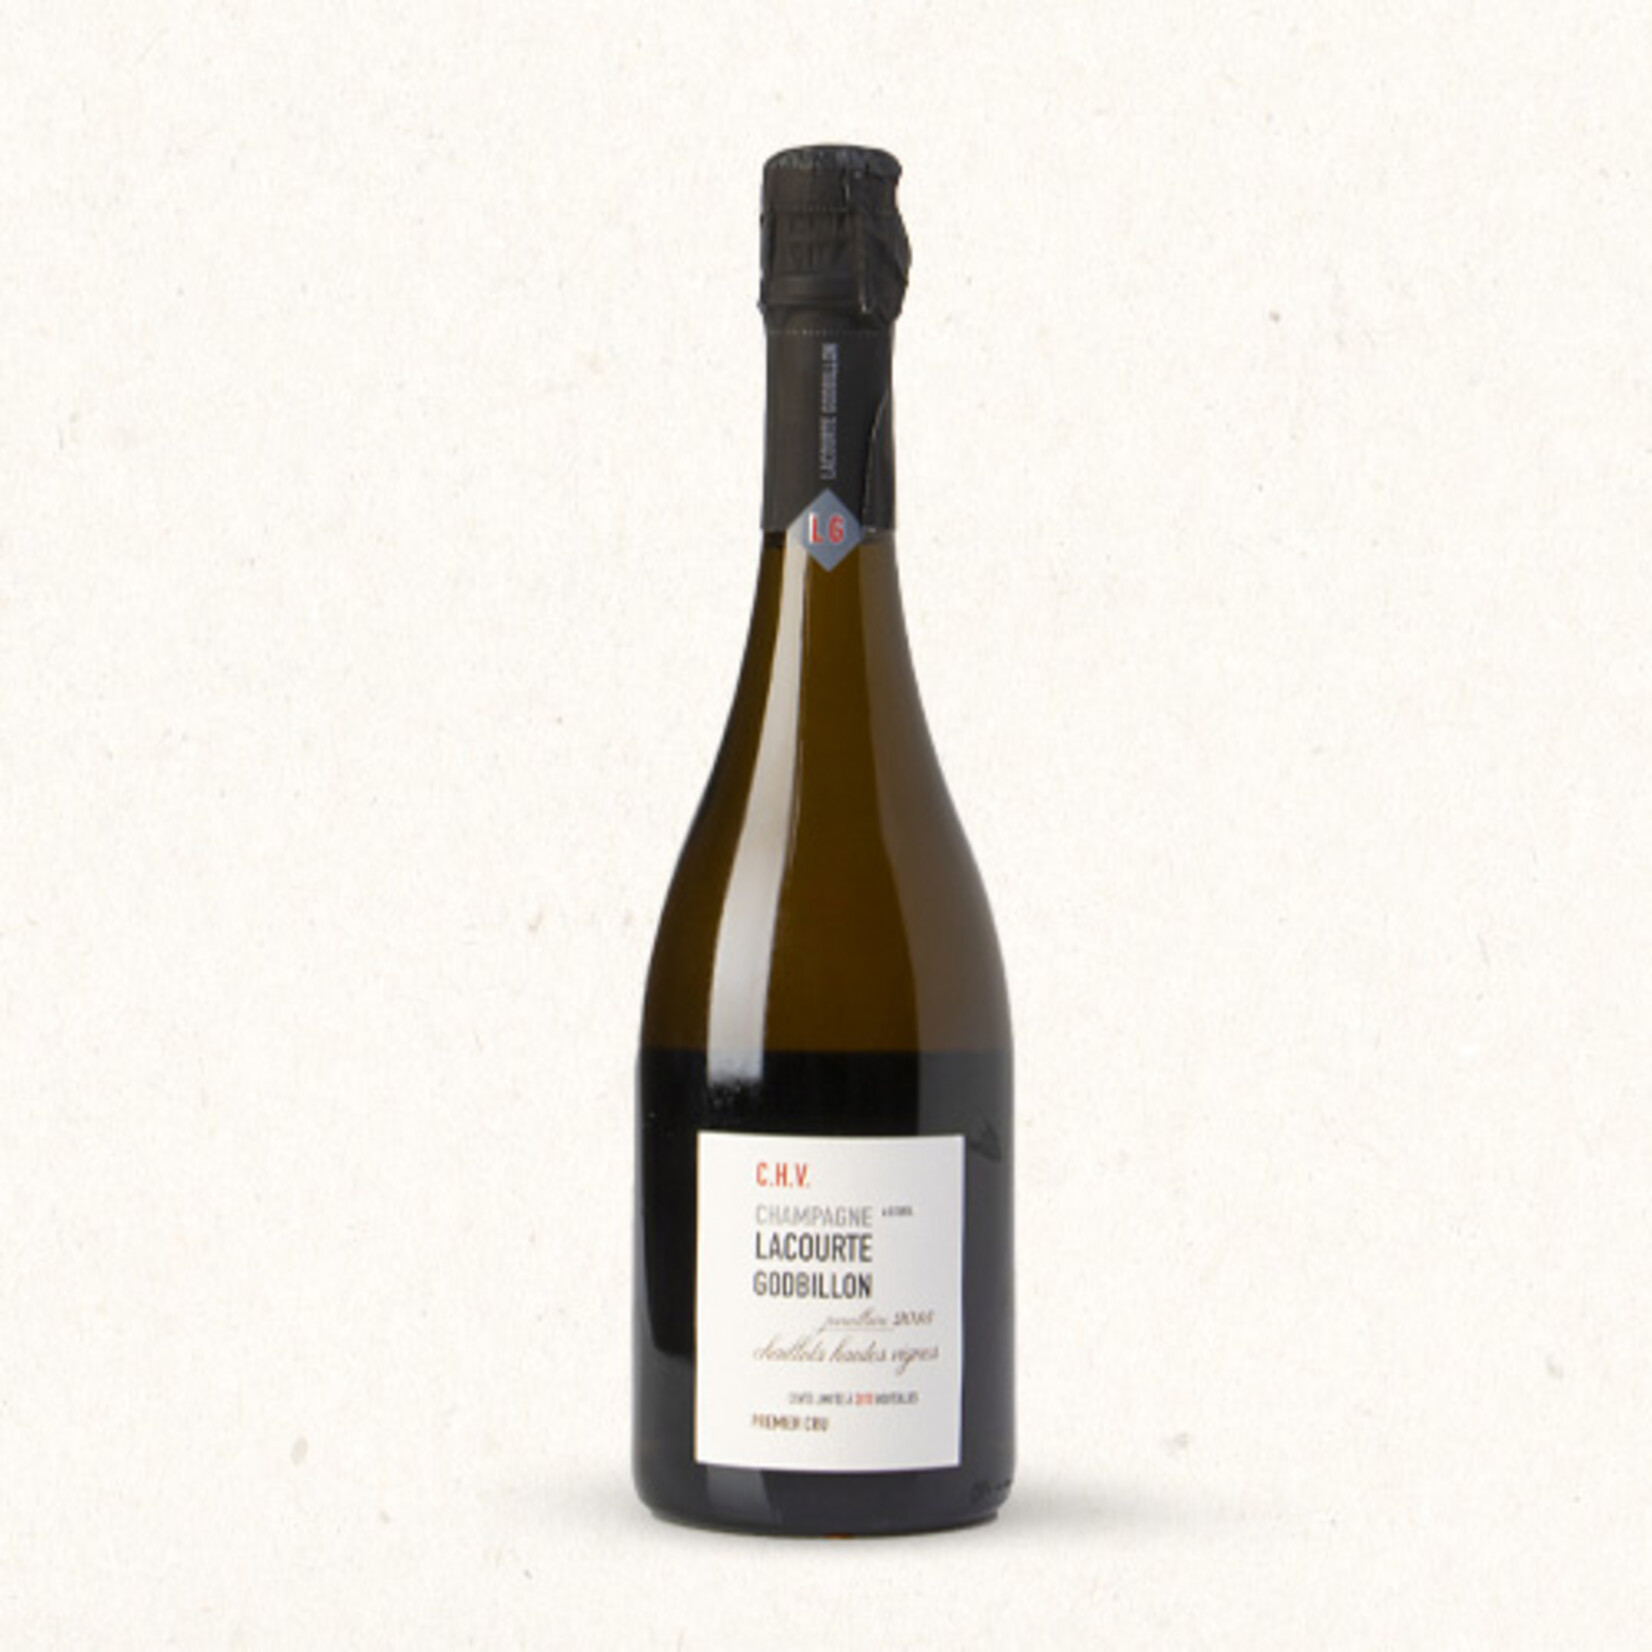 Lacourte Godbillon Vintage 2015 Chaillots Hautes Vignes blanc de blancs